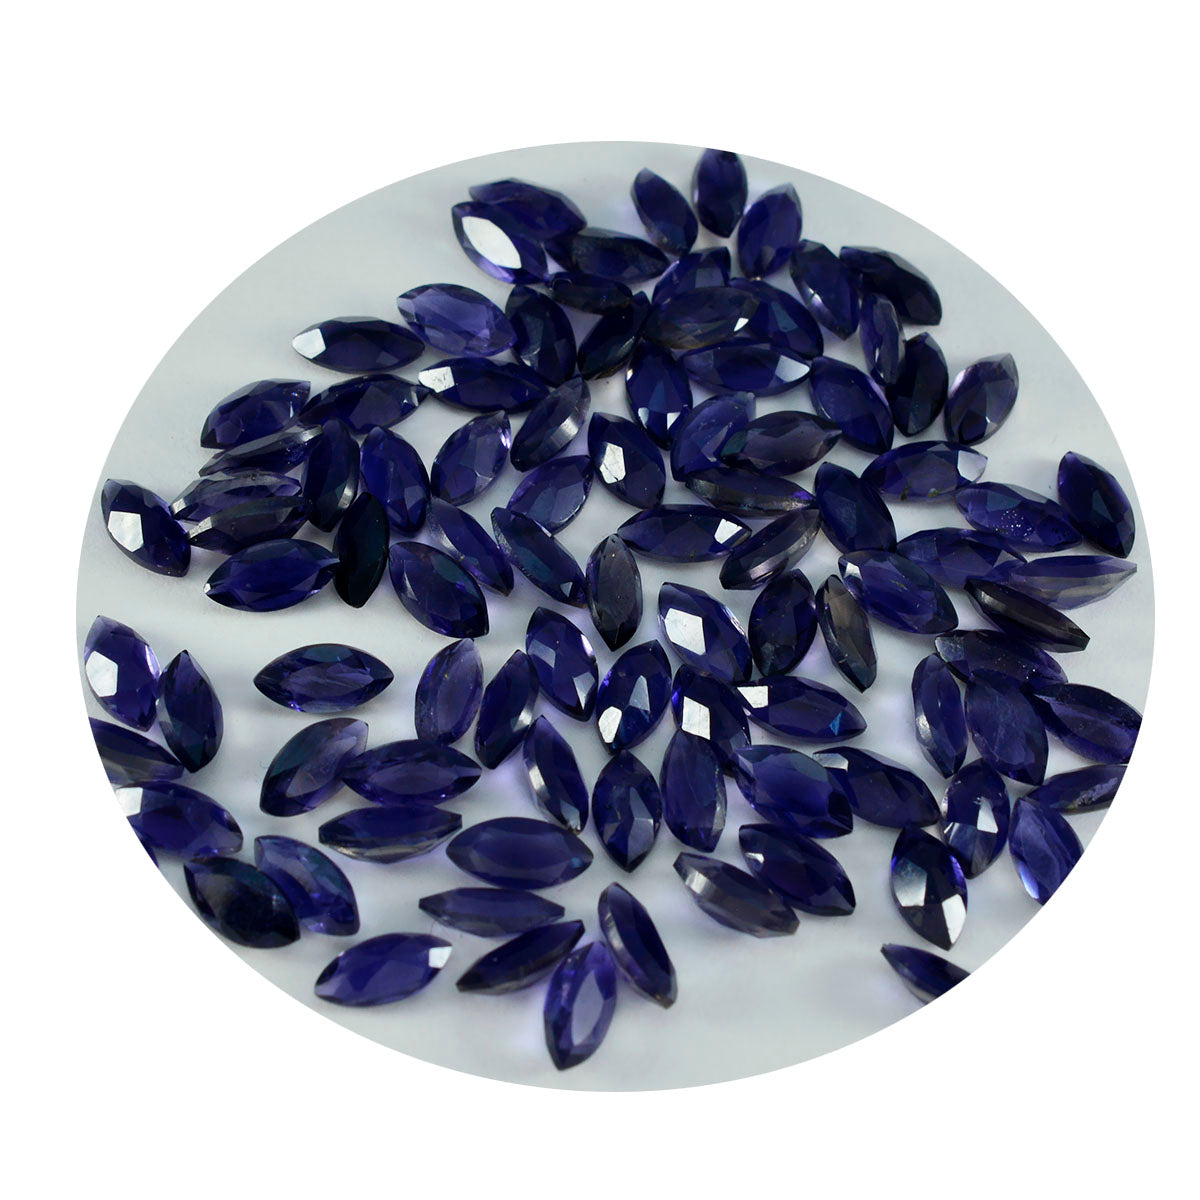 Riyogems 1 pièce d'iolite bleue à facettes 3x6mm forme marquise belle qualité pierre précieuse en vrac